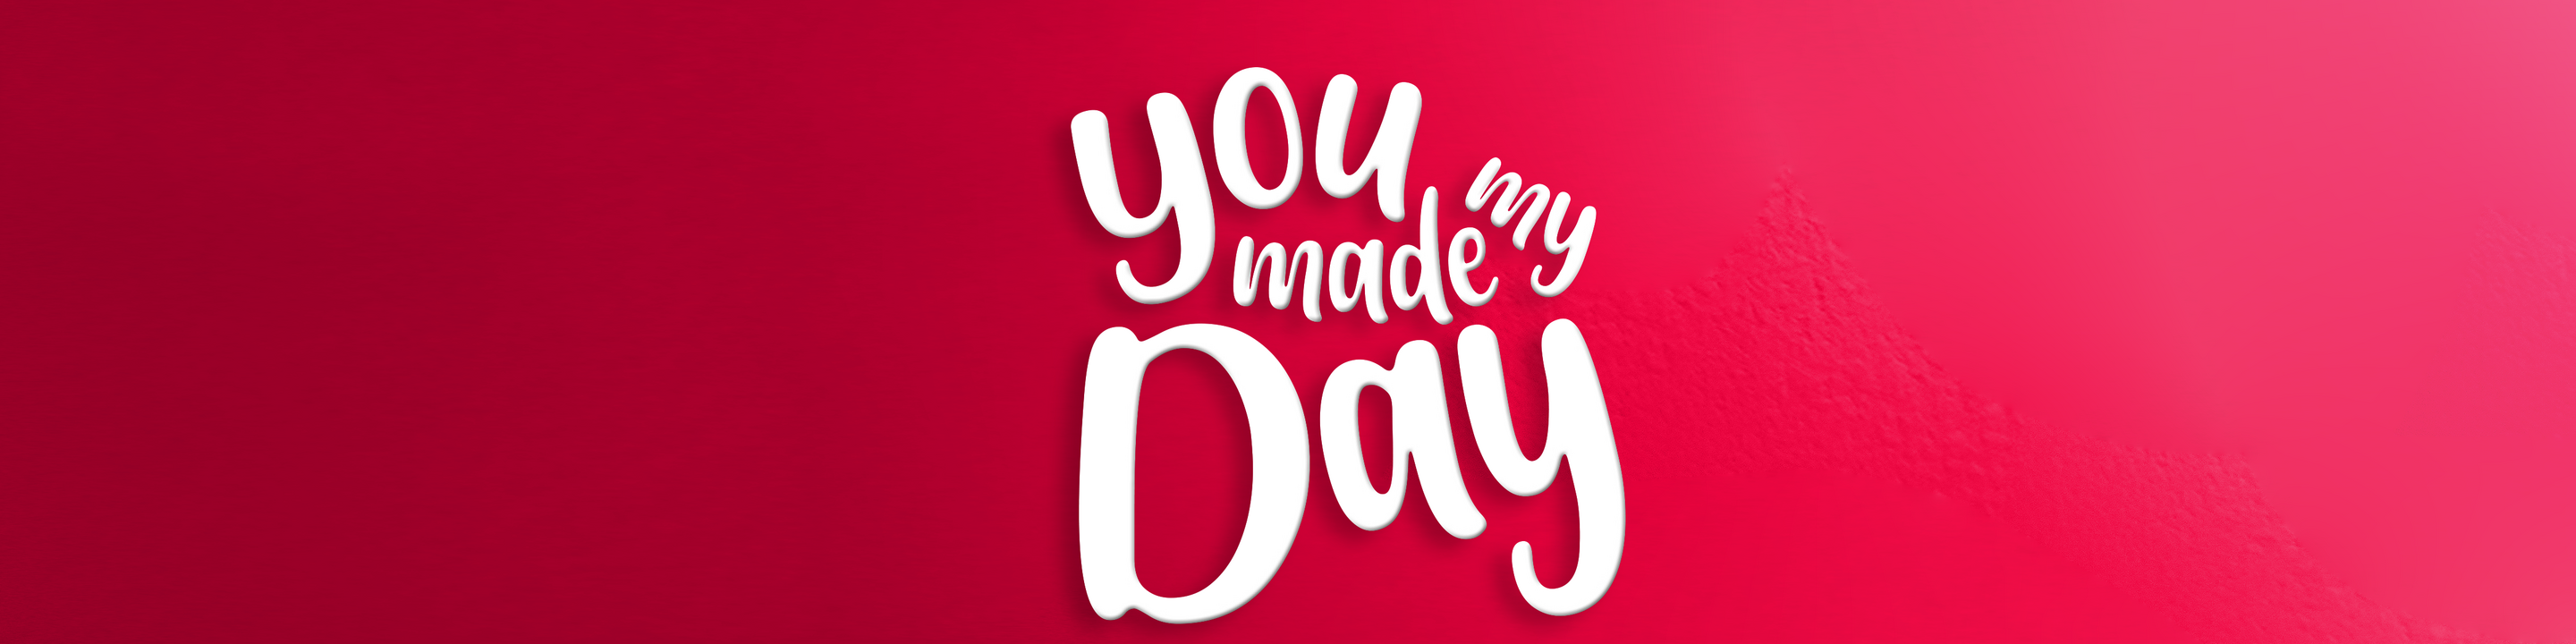 Schriftzug "You made my day" auf rotem Hintergrund